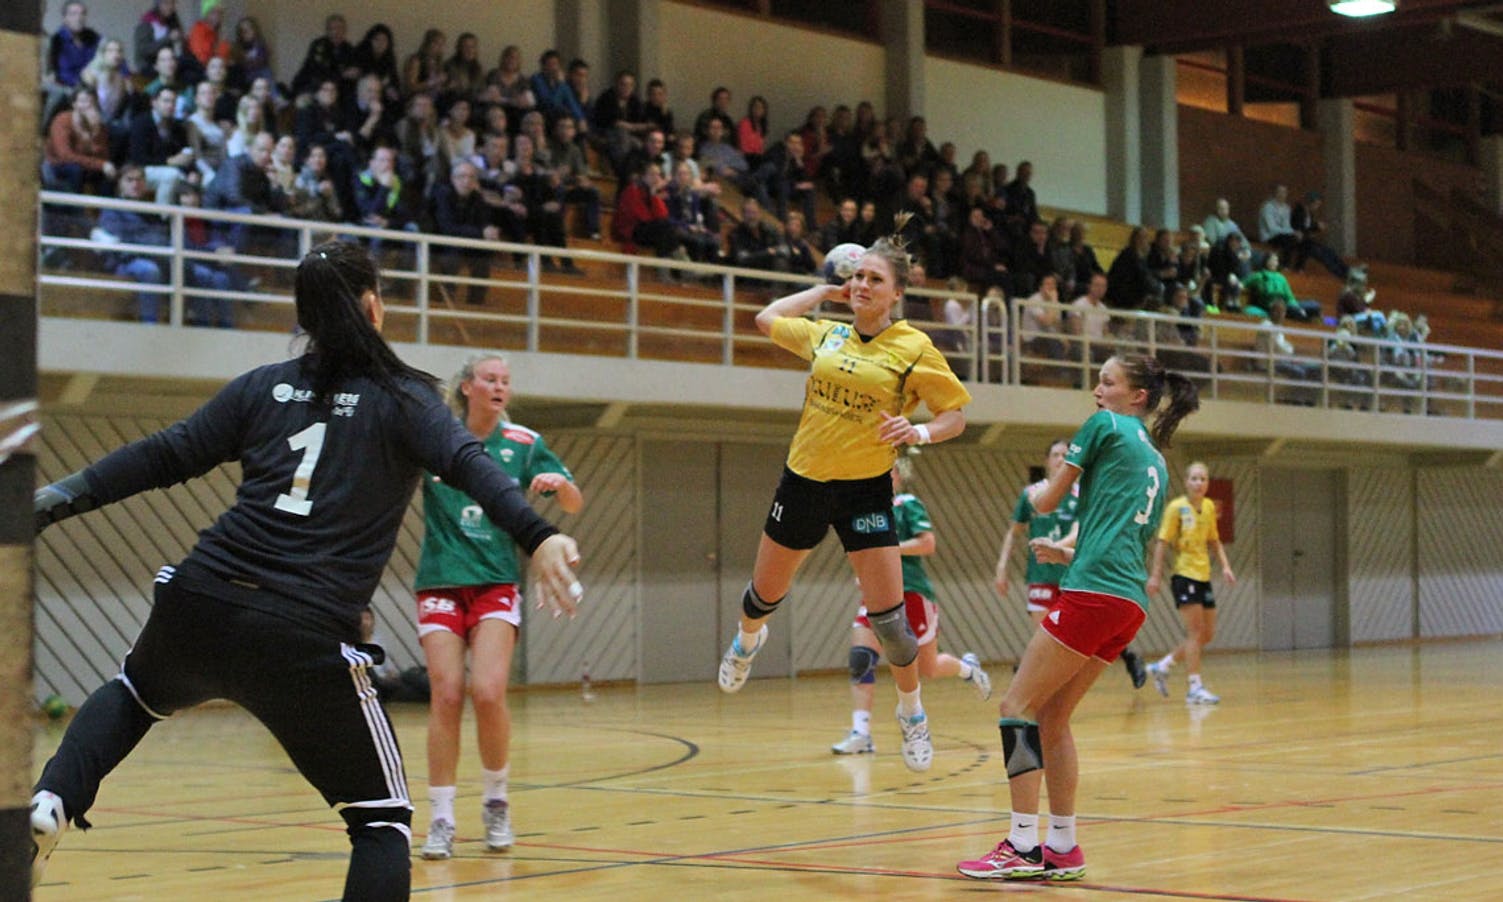 Zsofia i mål for Jotun mot Os i januar 2014. (Foto: KVB)